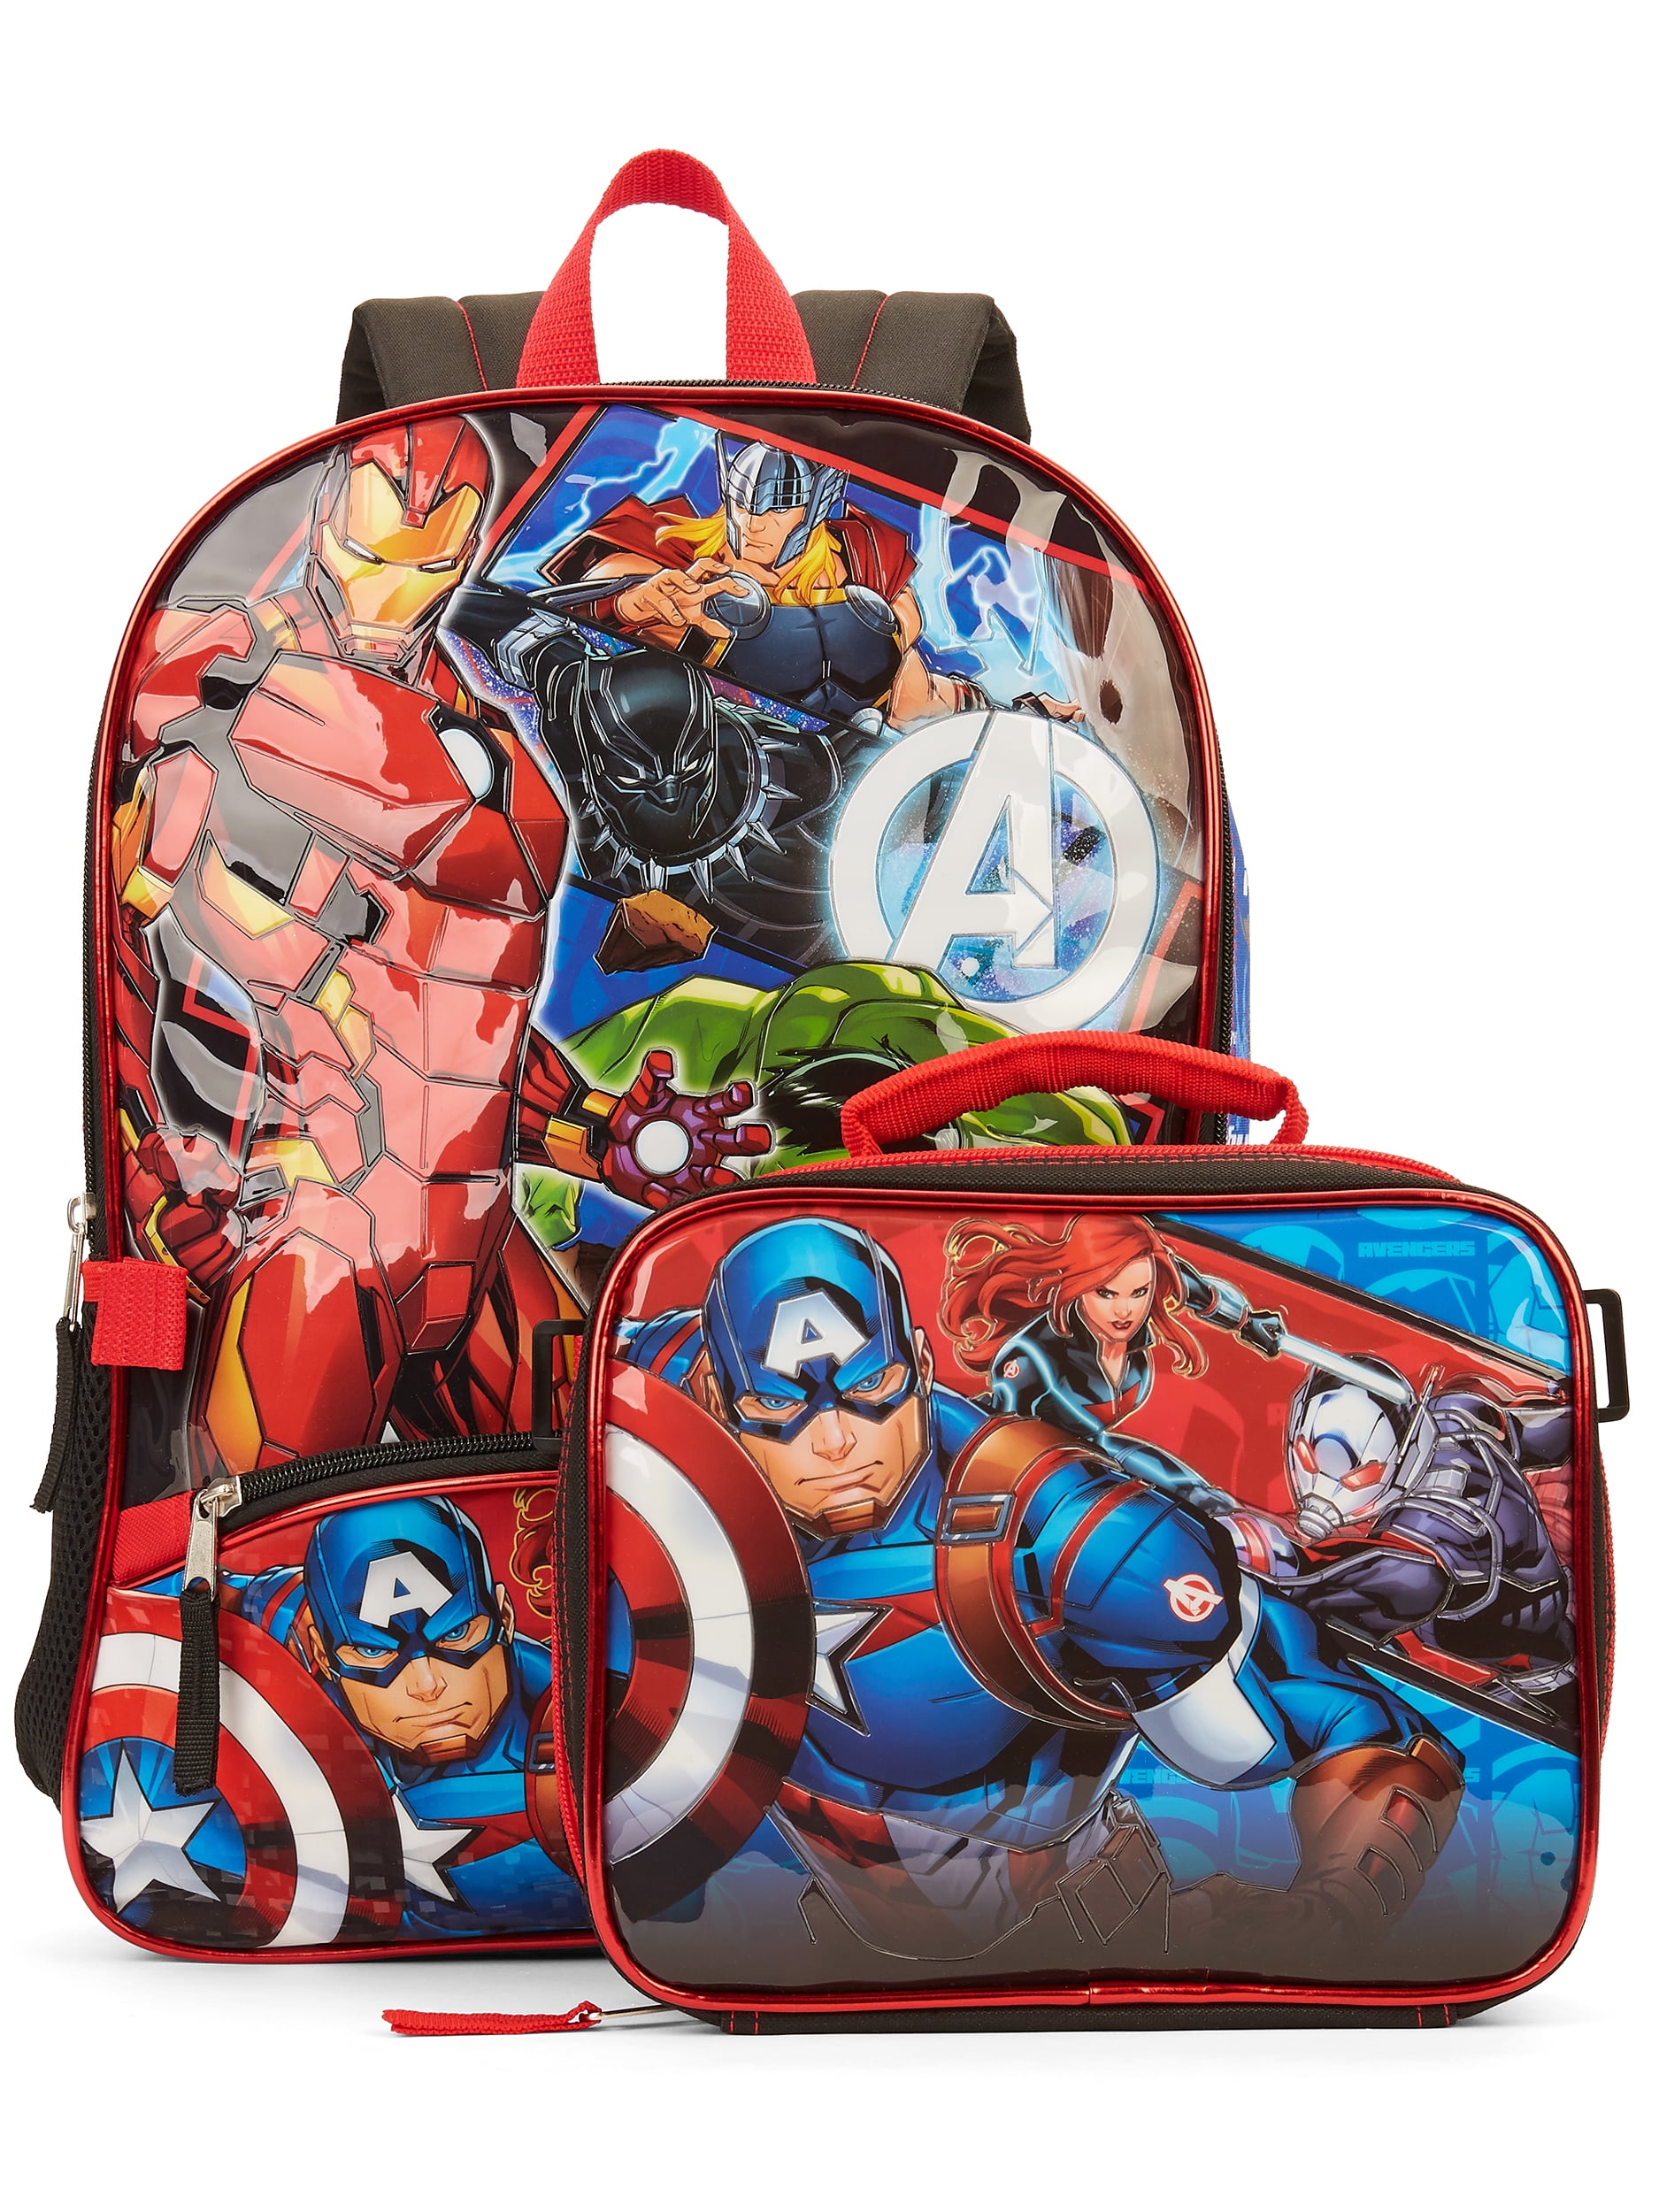 Marvel Avengers Character School Boys Backpack Bookbag Lunch Box SET Kids Toy 